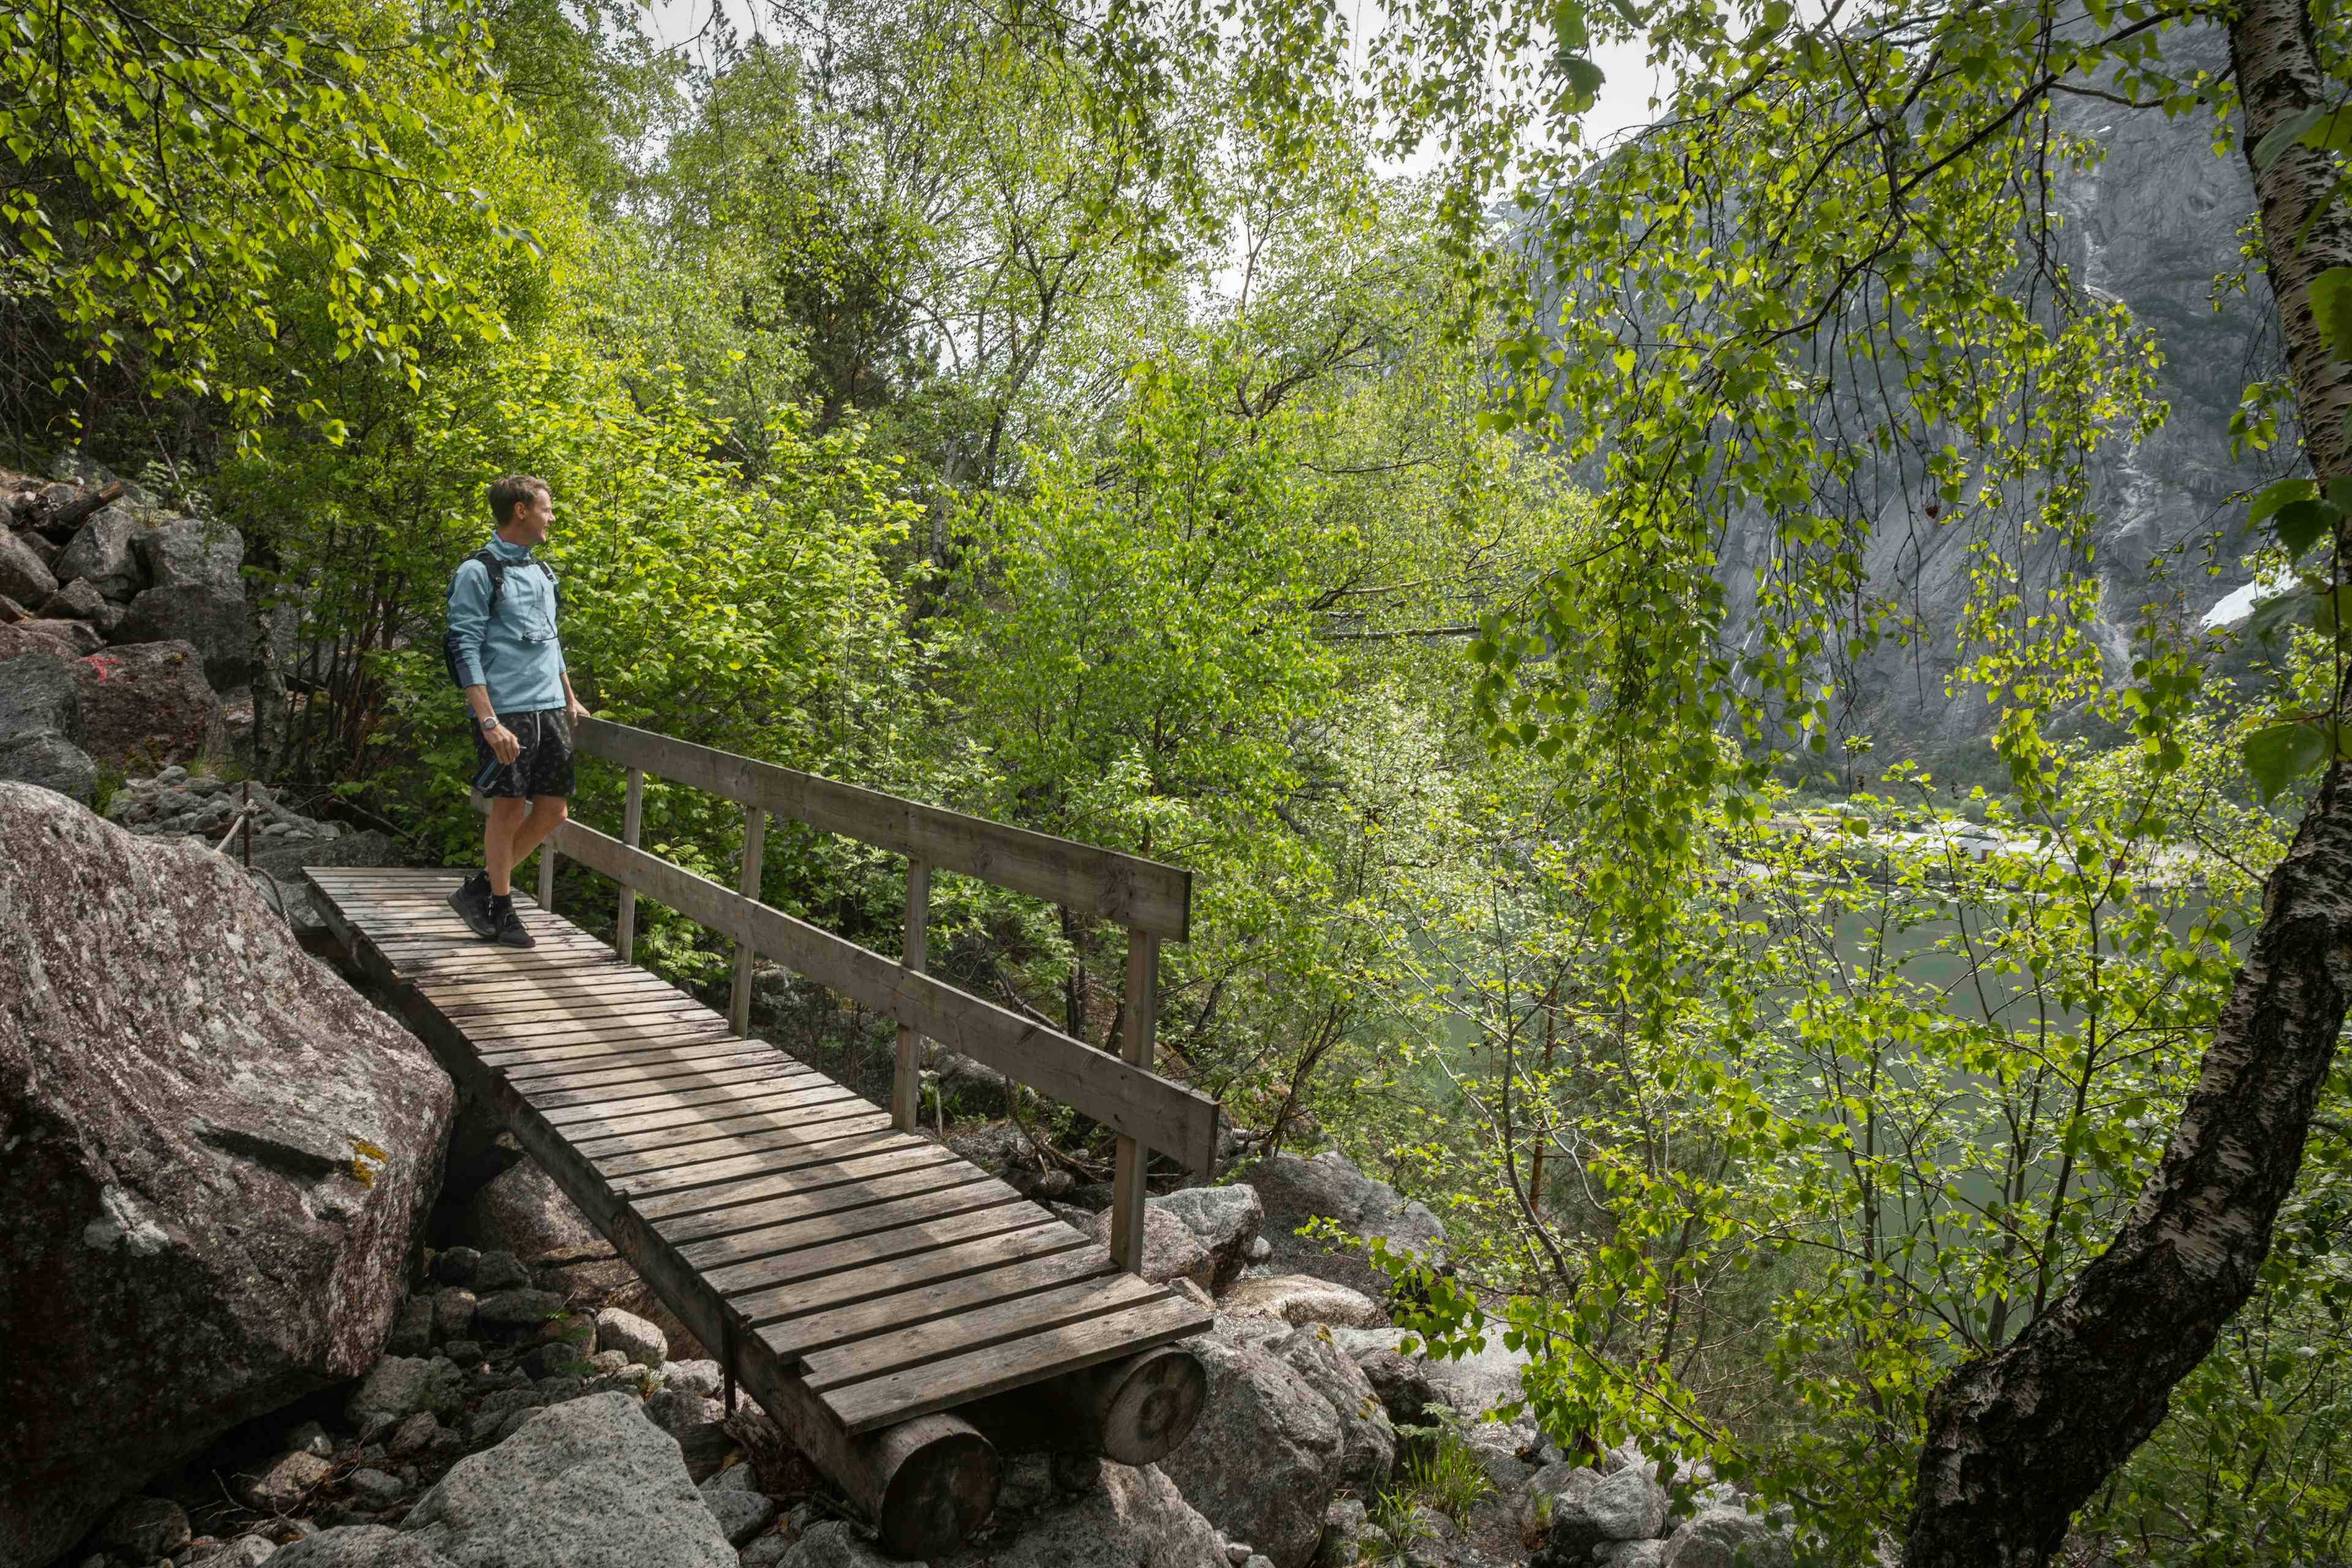 En kvinnelig turgåer som går på trestien boltet inn i fjellveggen ved siden av fjorden.